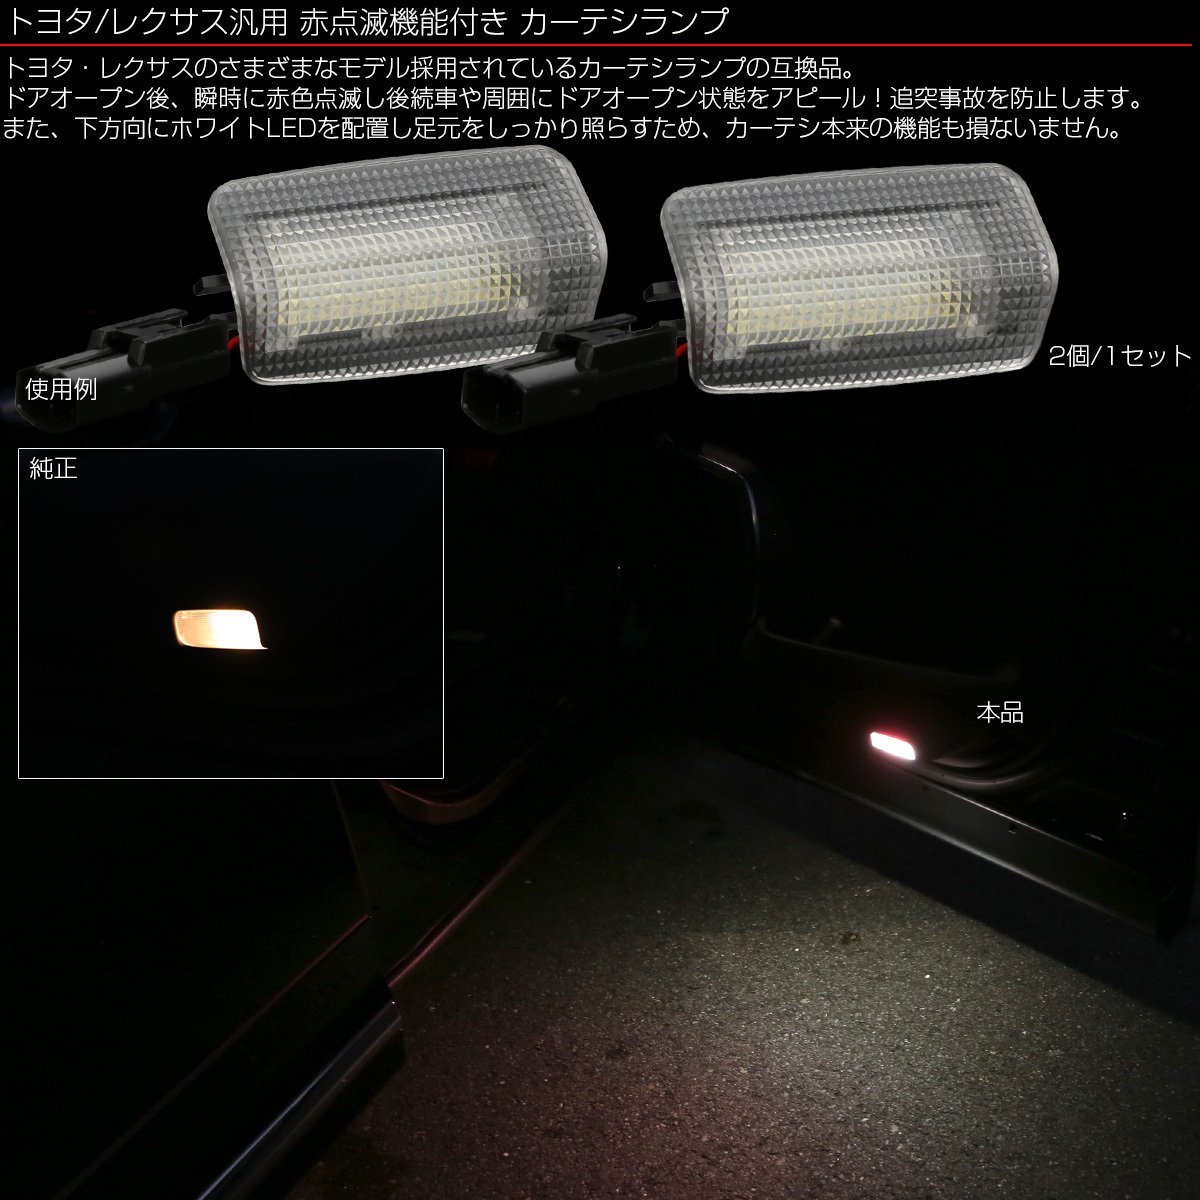 トヨタ レクサス 汎用 LED カーテシランプ ホワイト/レッド点滅 ツインカラー 赤点滅 純正 81230-48020 81230-30200 互換品 2個 R-454_画像2